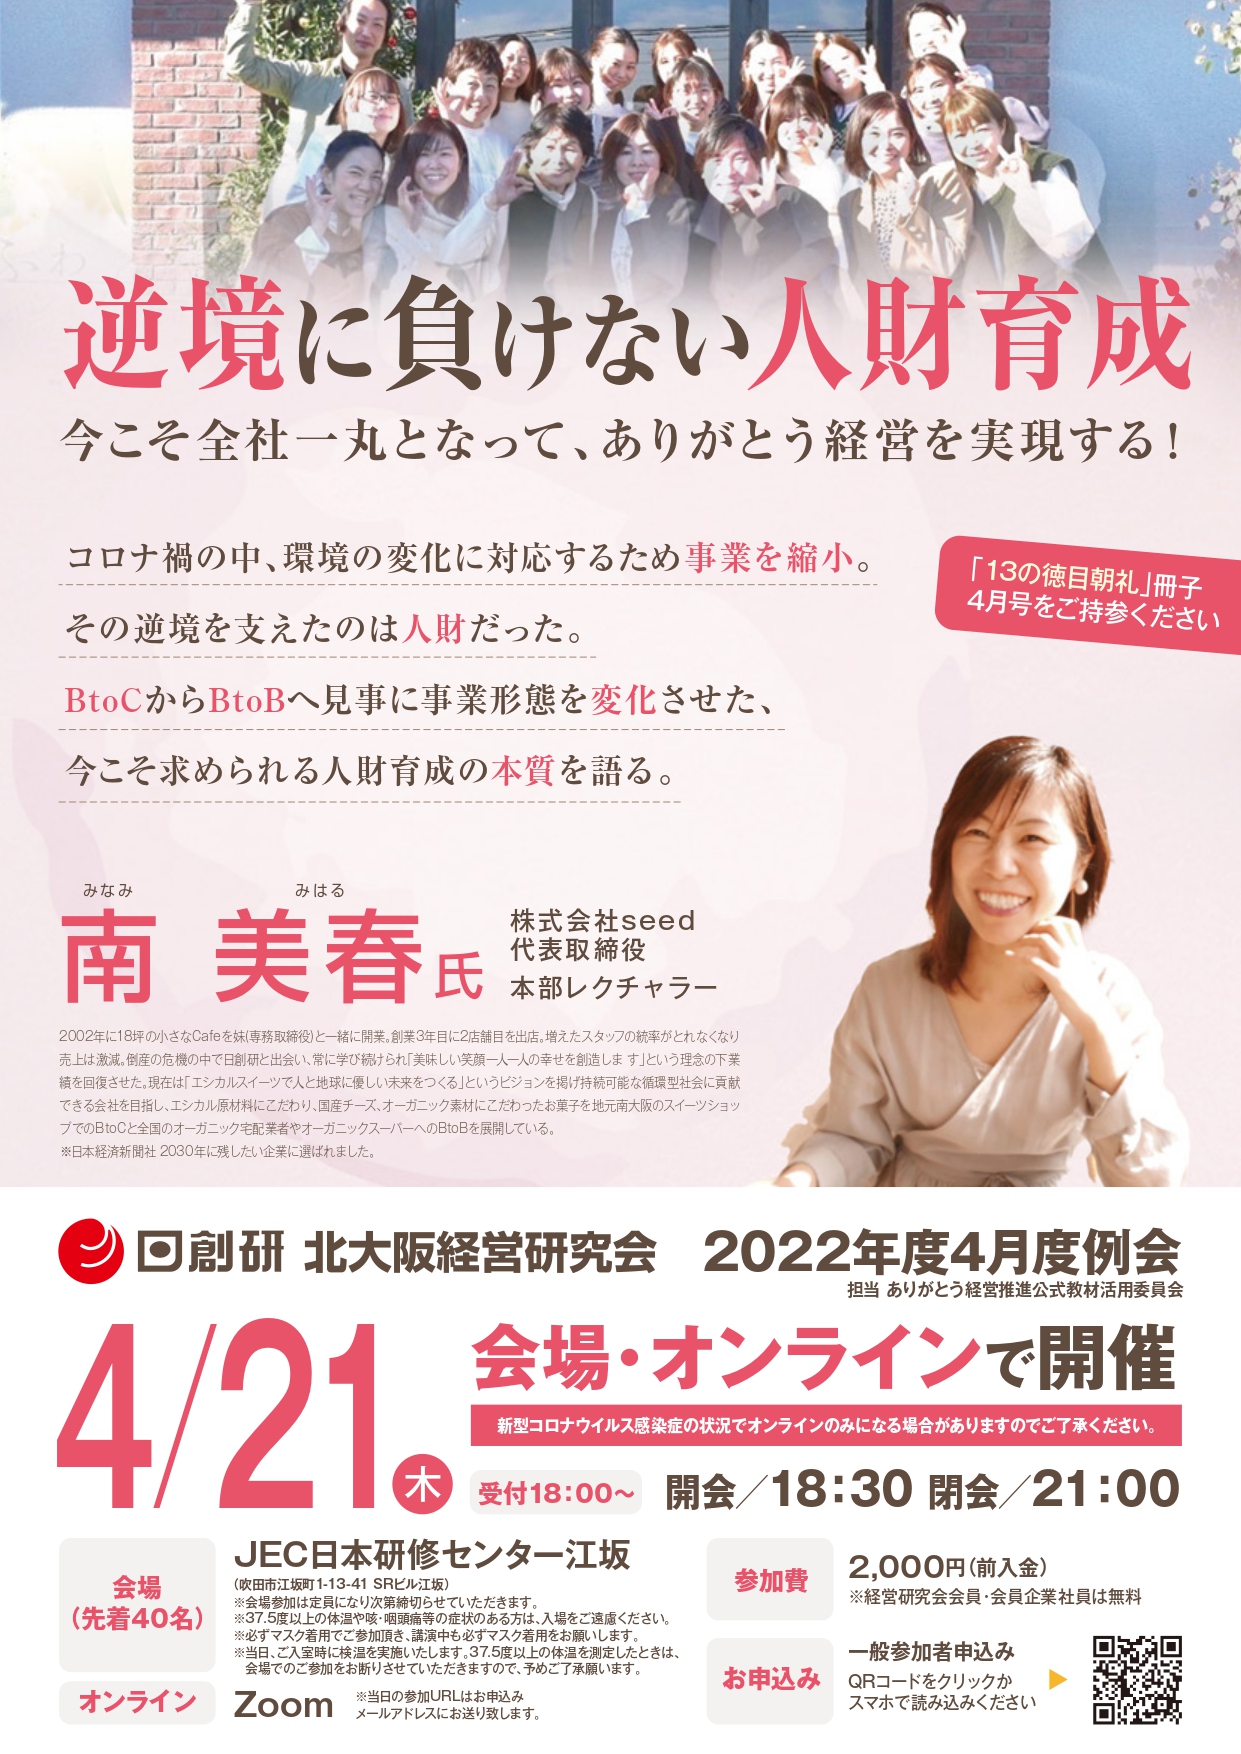 2022年度 4月度例会 【4/21(木)】開催